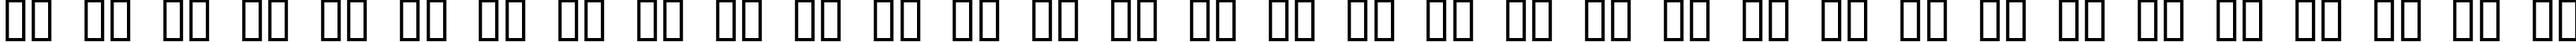 Пример написания русского алфавита шрифтом Dinobots Normal